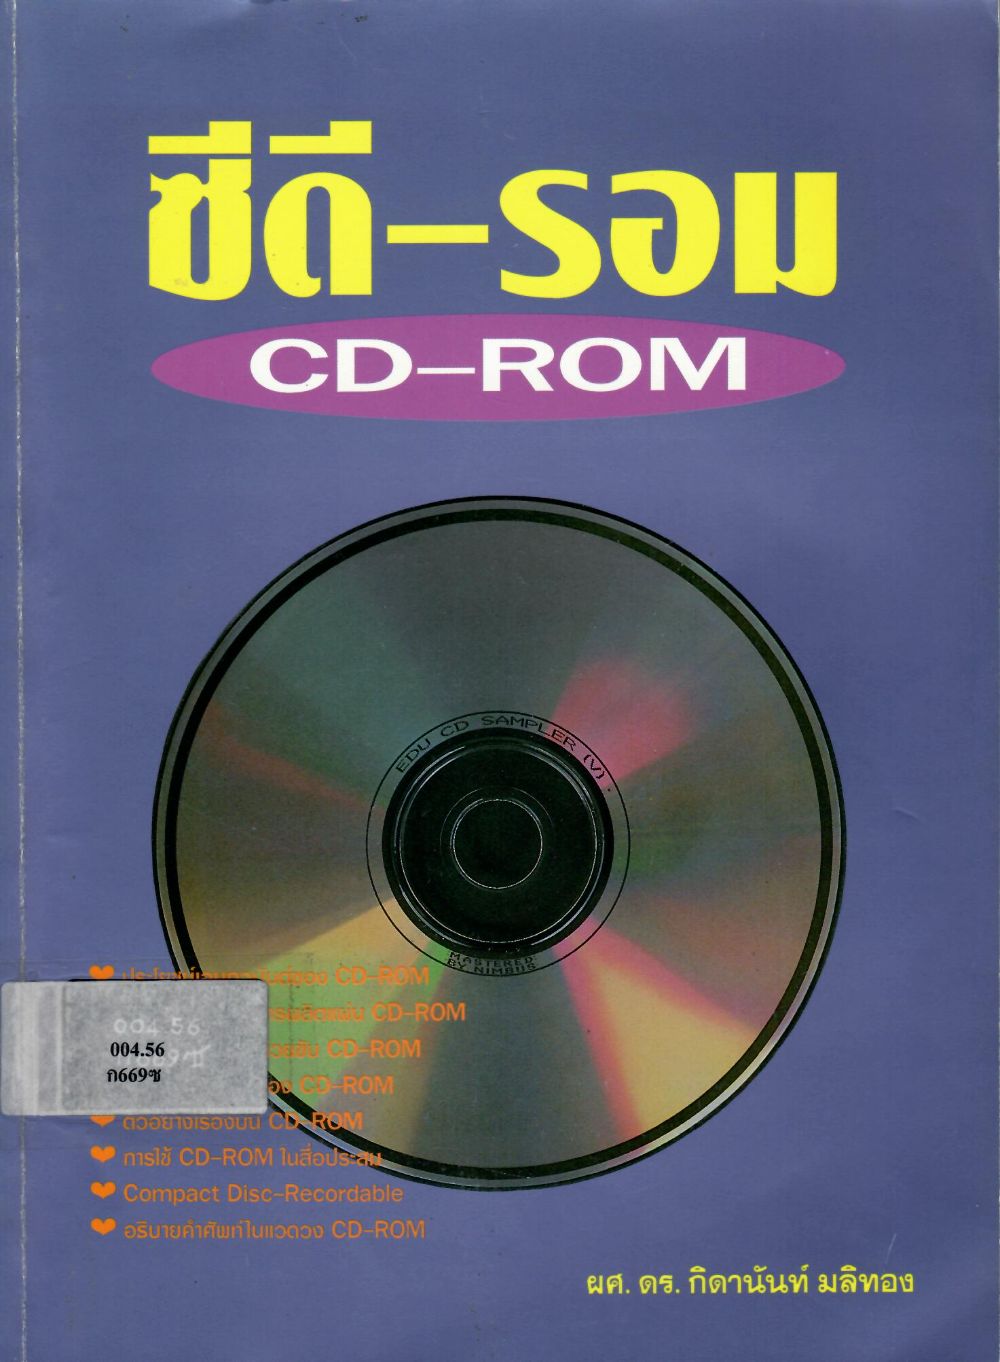 ซีดี-รอม CD-ROM/ กิดานันท์ มลิทอง